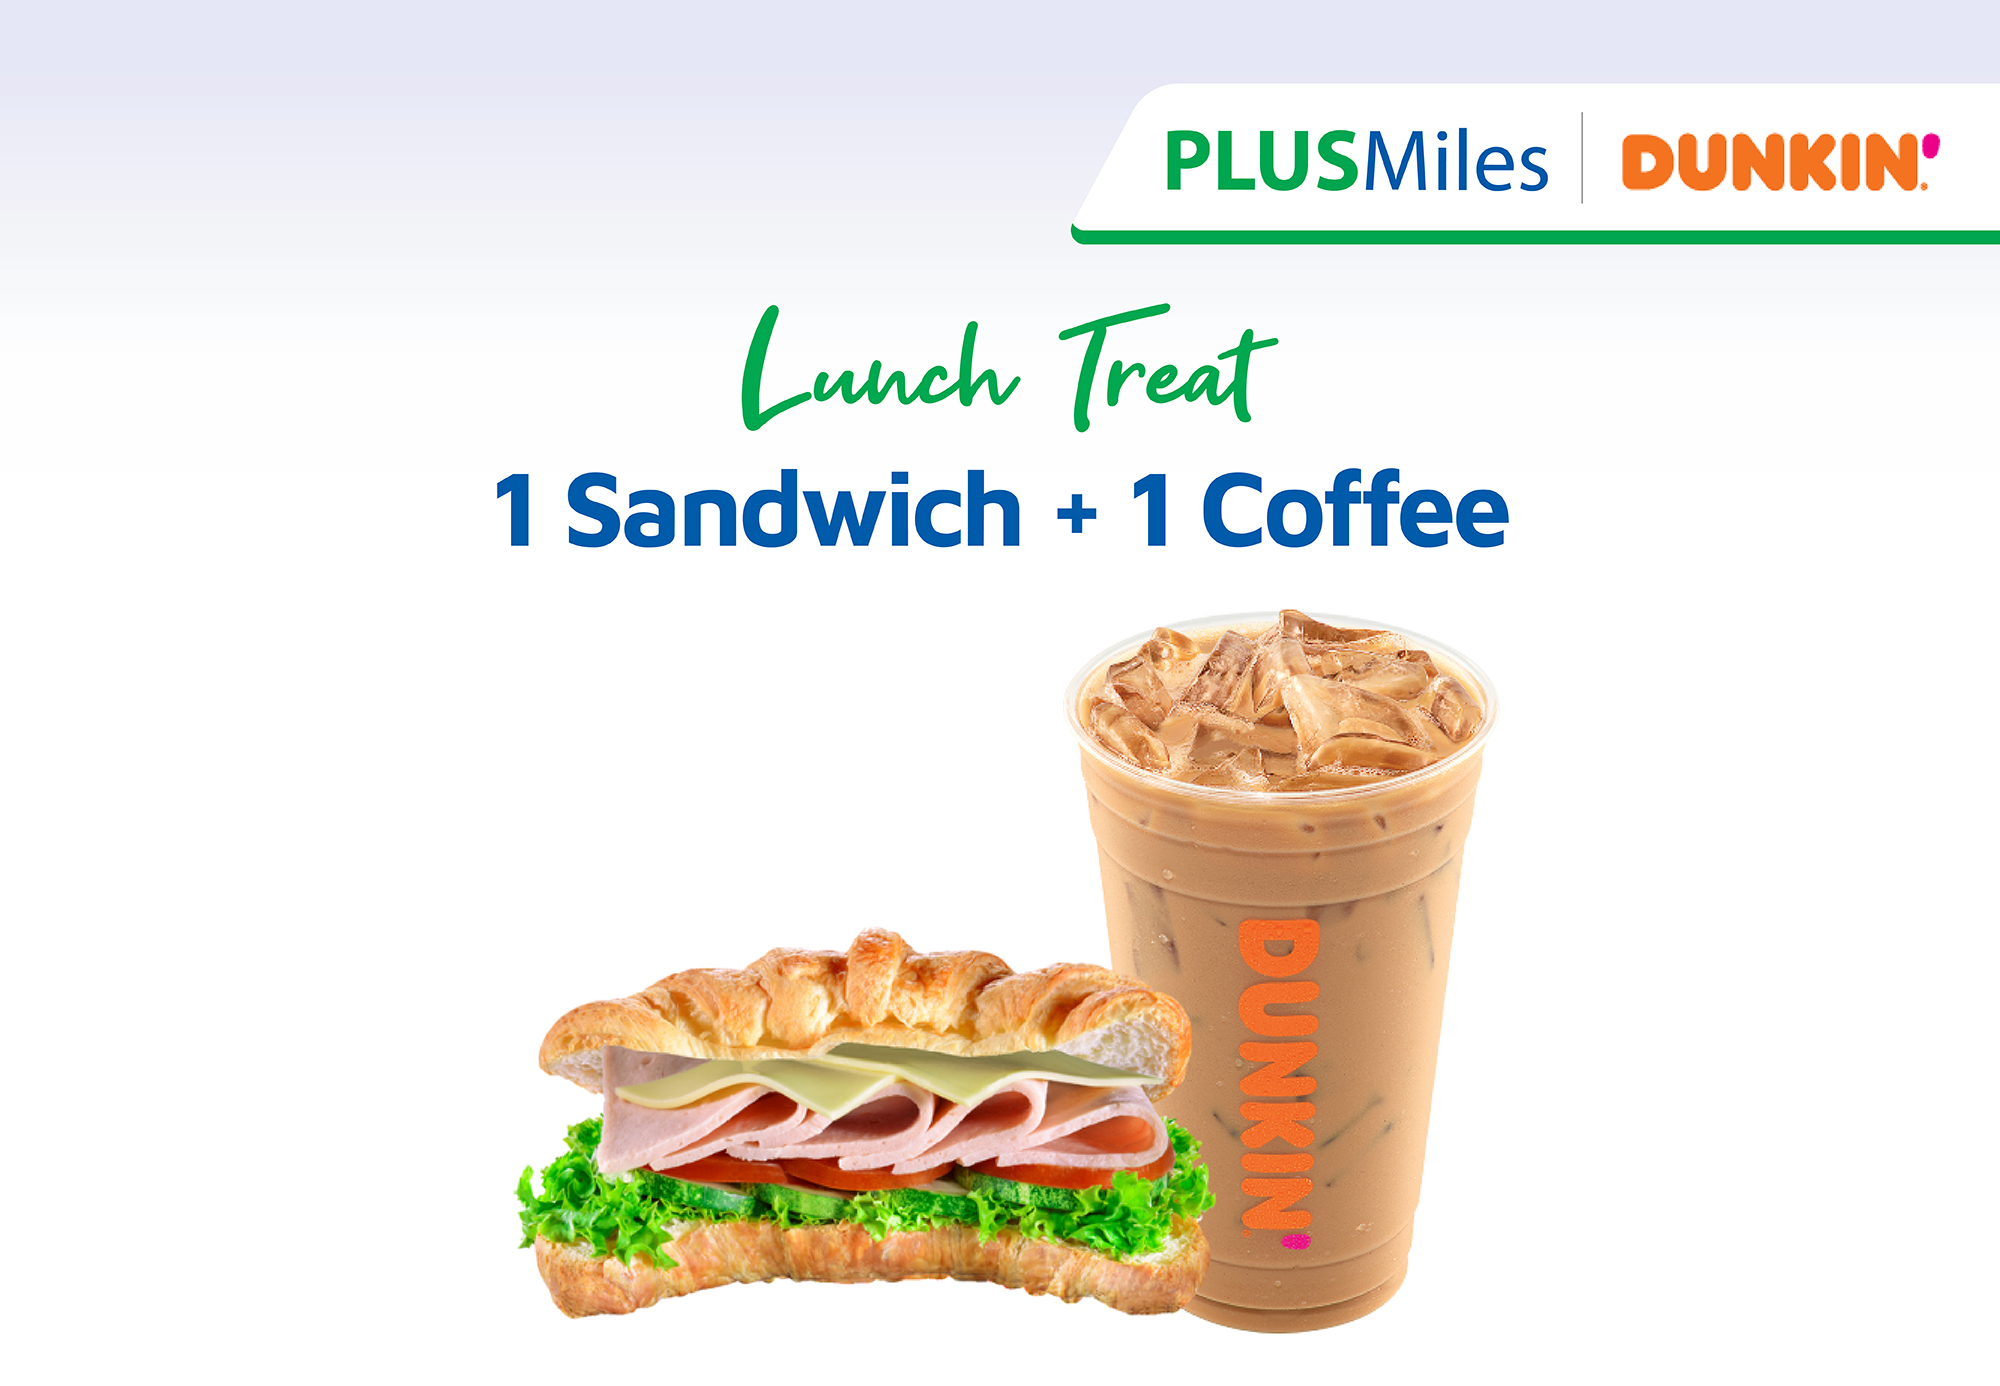 Lunch Treat: 1 Sandwich + 1 Coffee